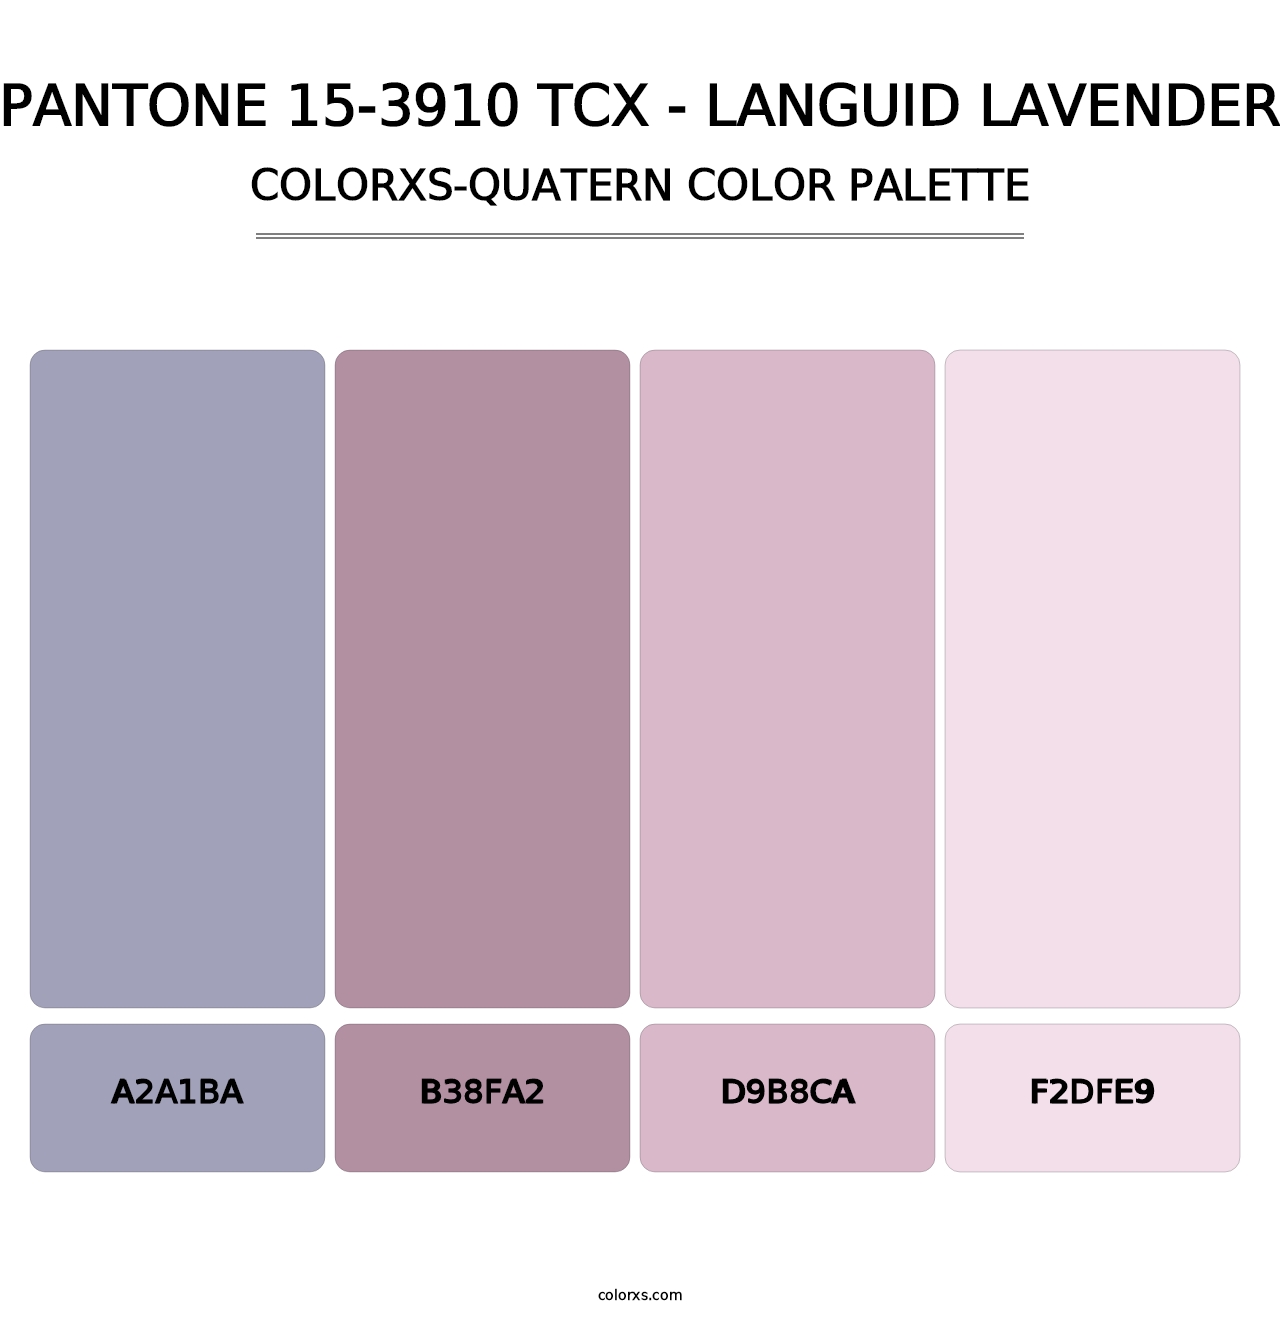 PANTONE 15-3910 TCX - Languid Lavender - Colorxs Quatern Palette